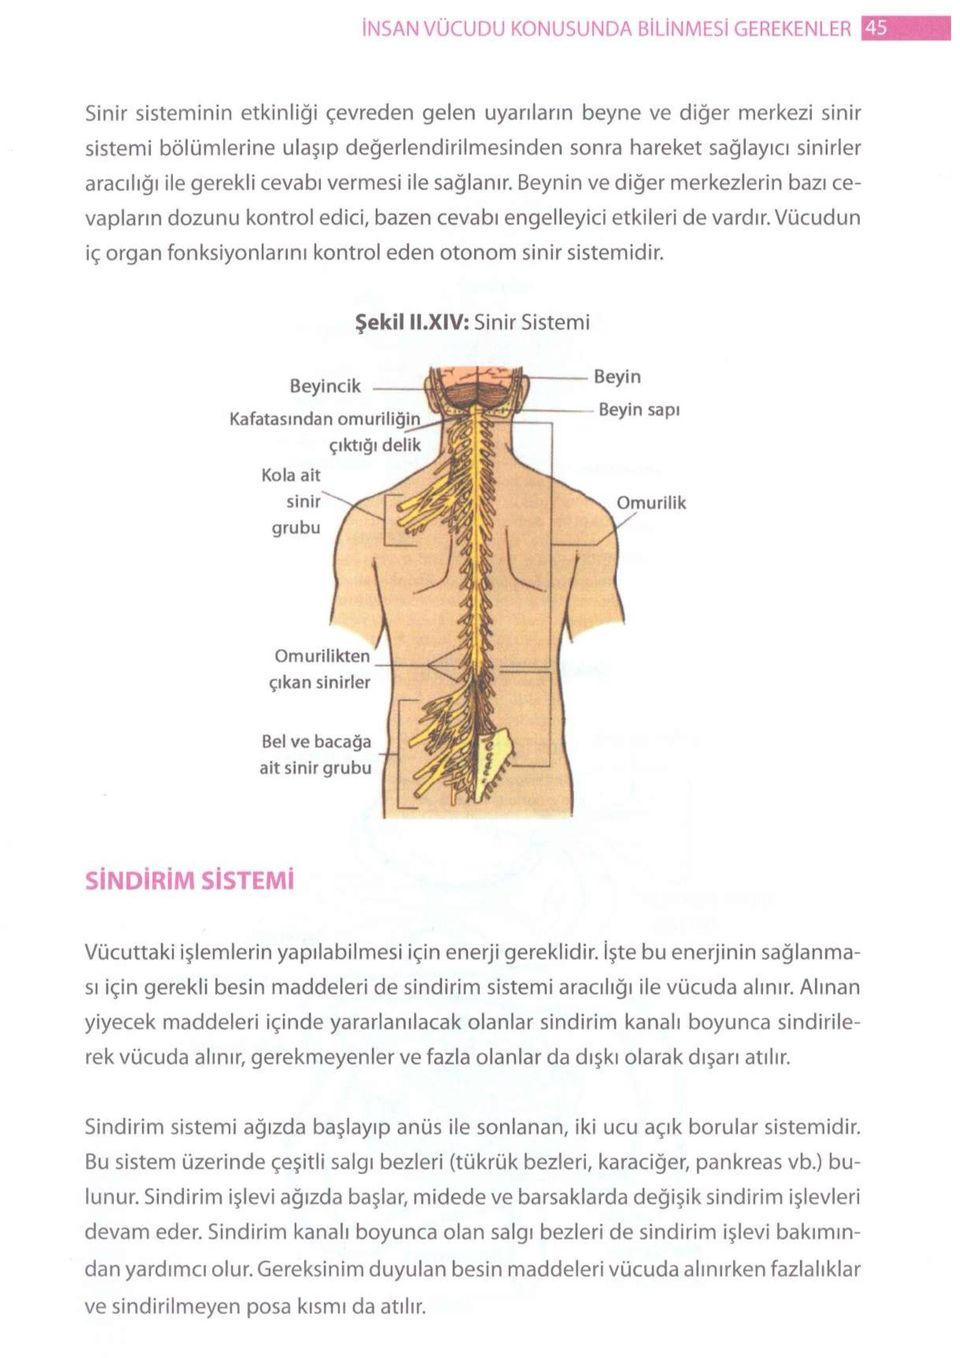 Vücudun iç organ fonksiyonlarını kontrol eden otonom sinir sistemidir. Şekil II.